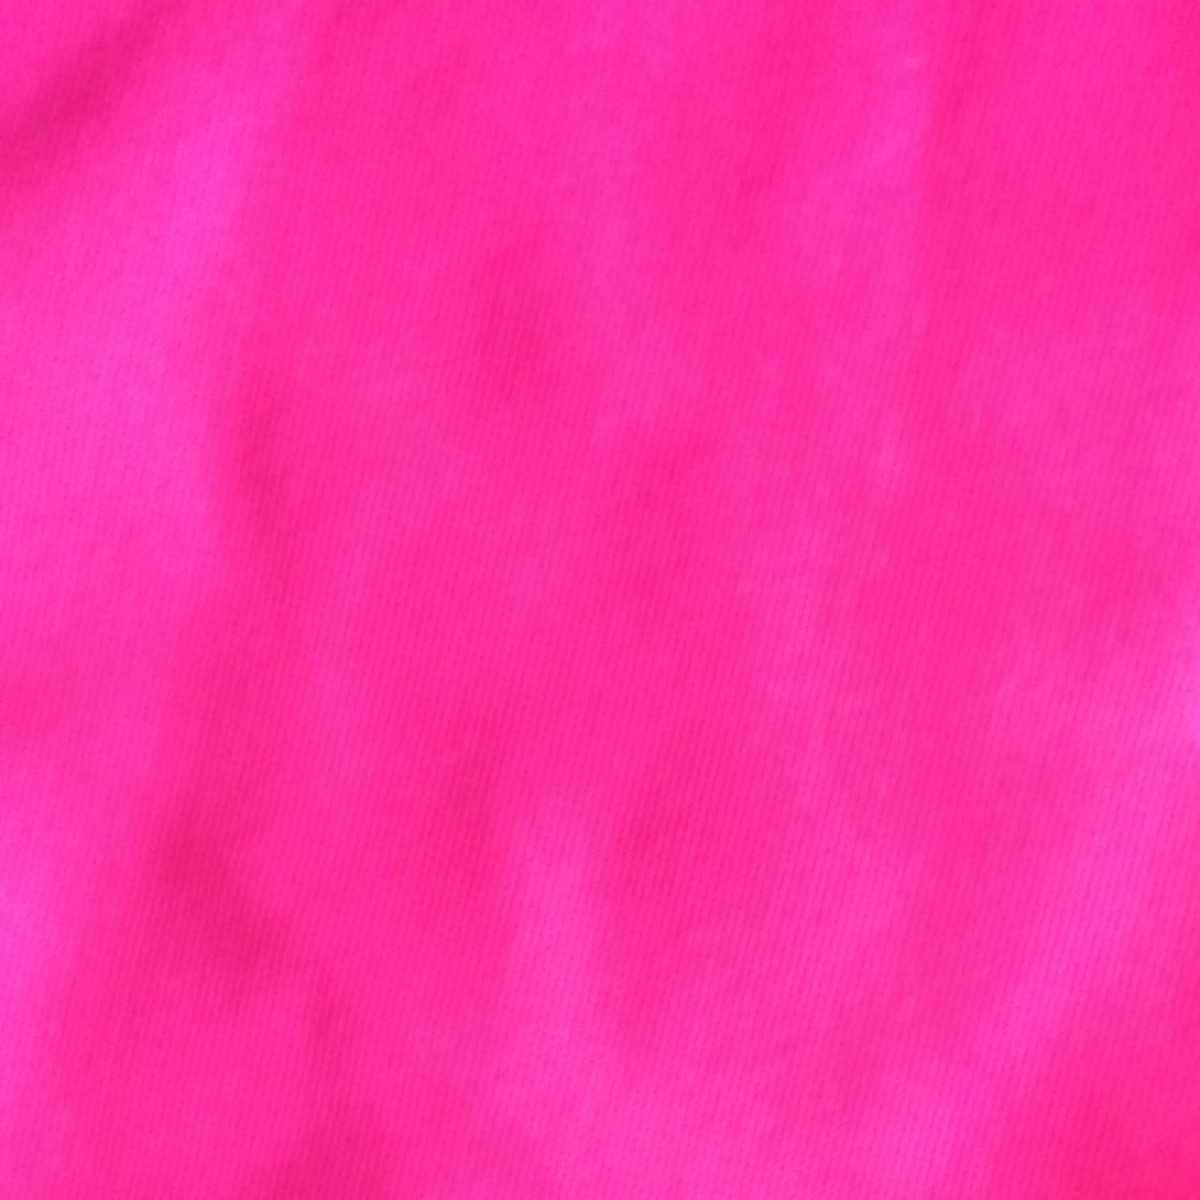 Neon Pink Wallpaper Desktop HD Pics Of Smartphone Background